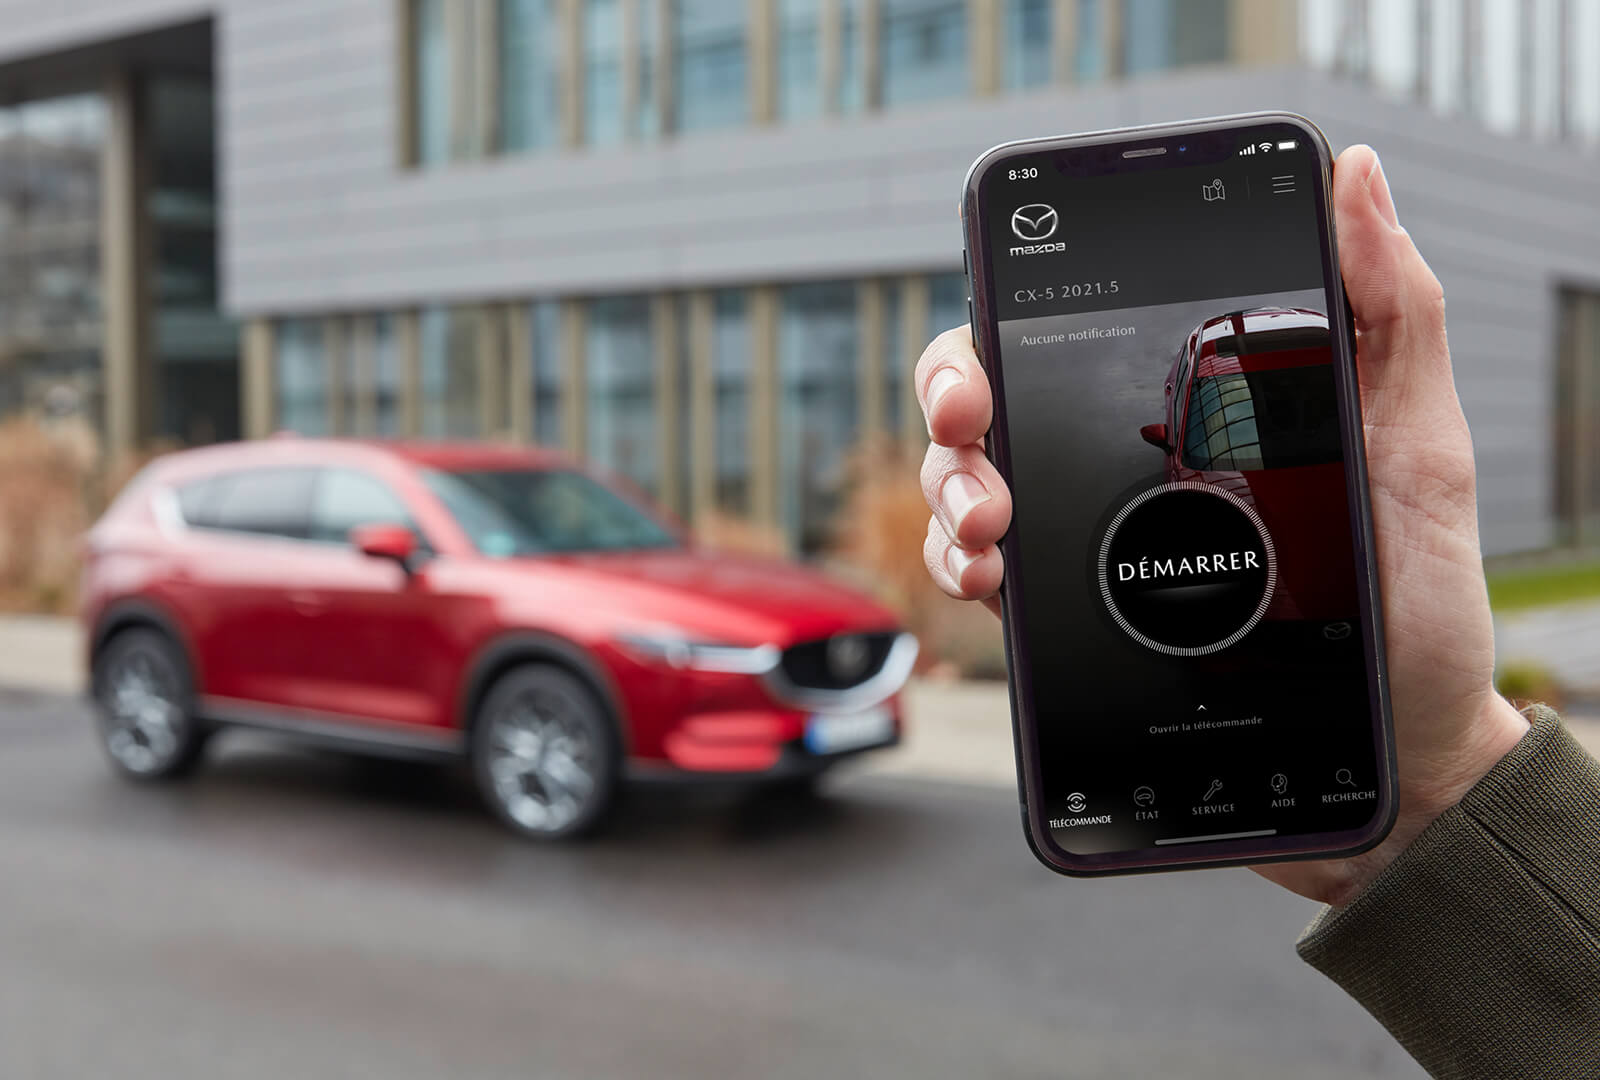 Un homme tient un téléphone affichant l’appli MyMazda tandis qu’un VUS Mazda rouge garé est visible en arrière-plan